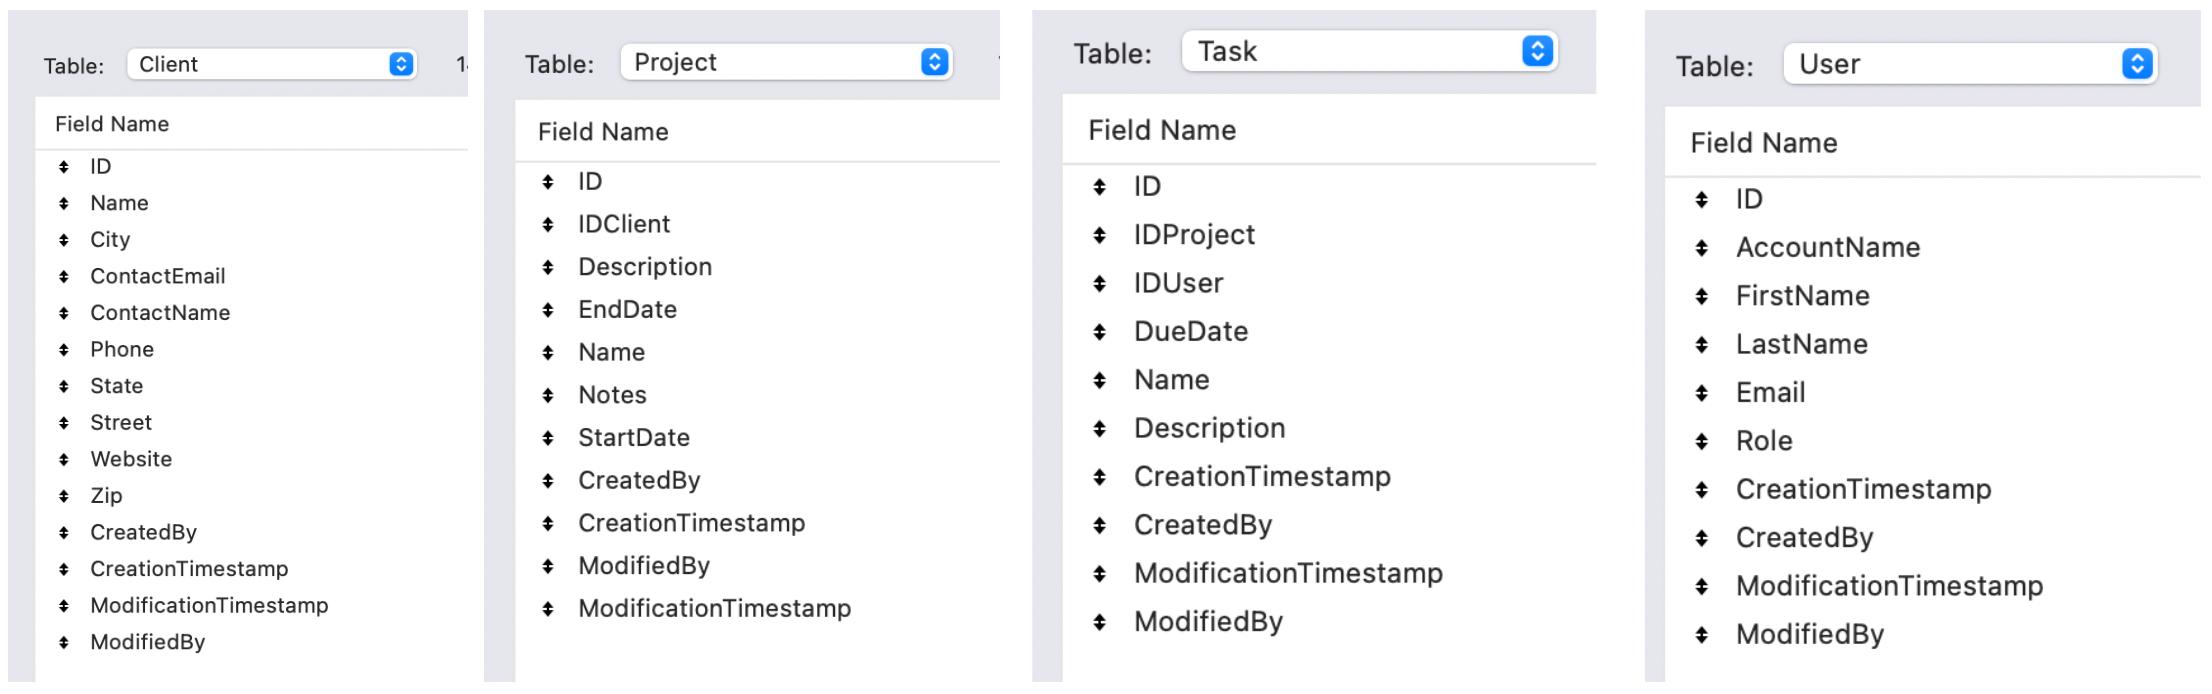 FileMaker-Project-Management-Template-screenshot-13